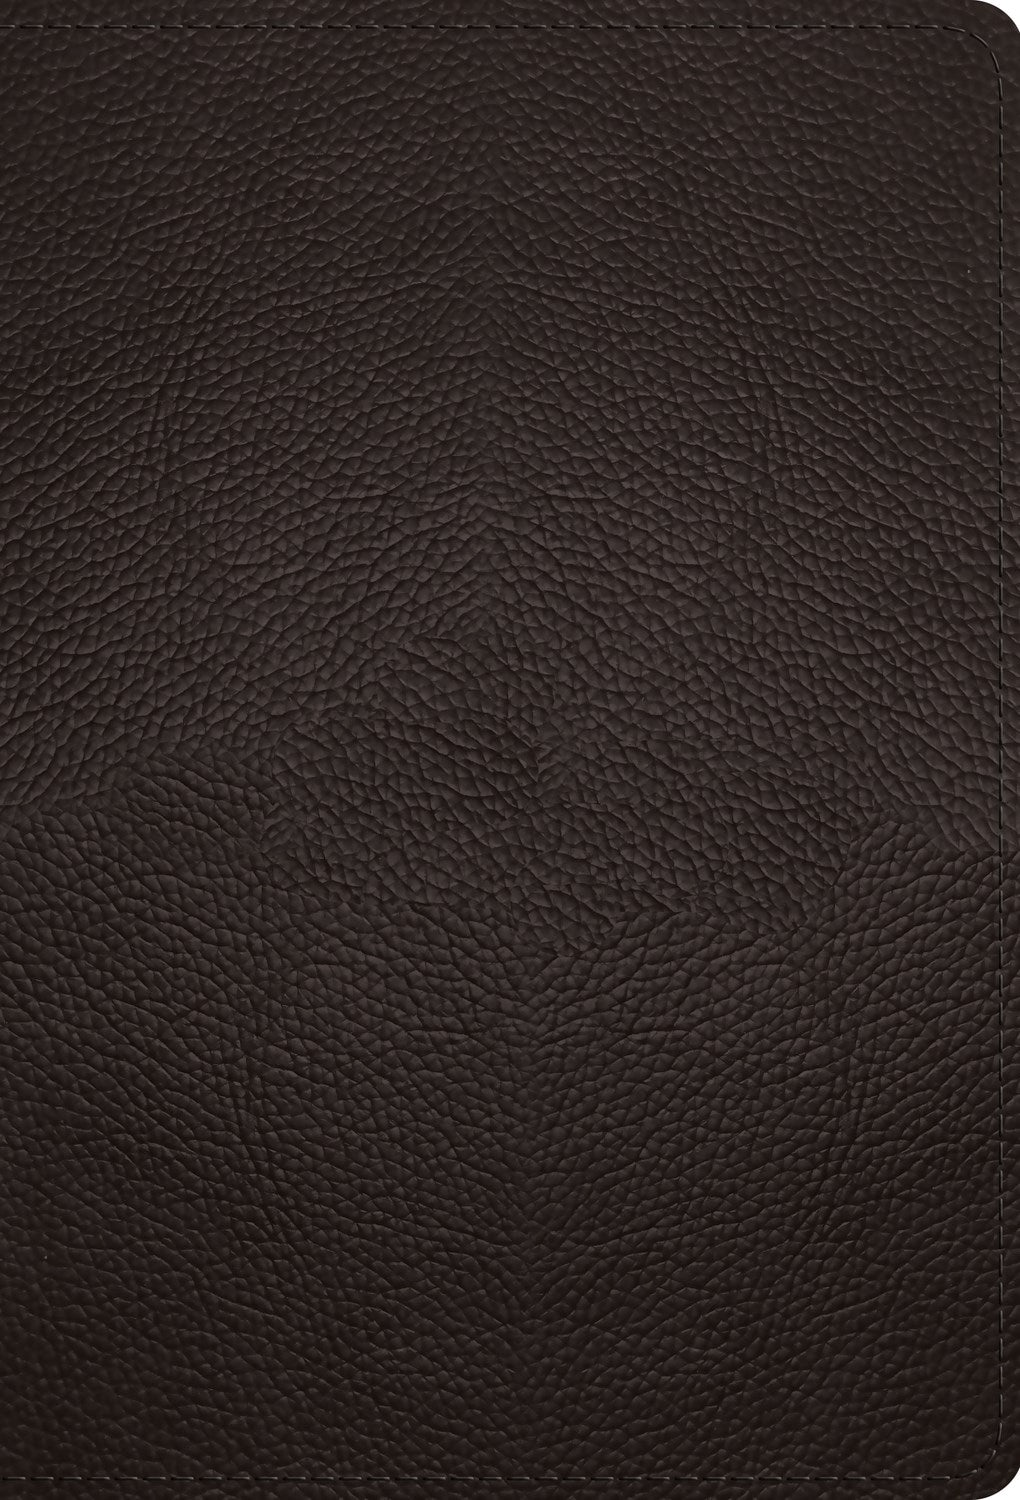 ESV Large Print Compact Bible-Deep Brown Buffalo Leather